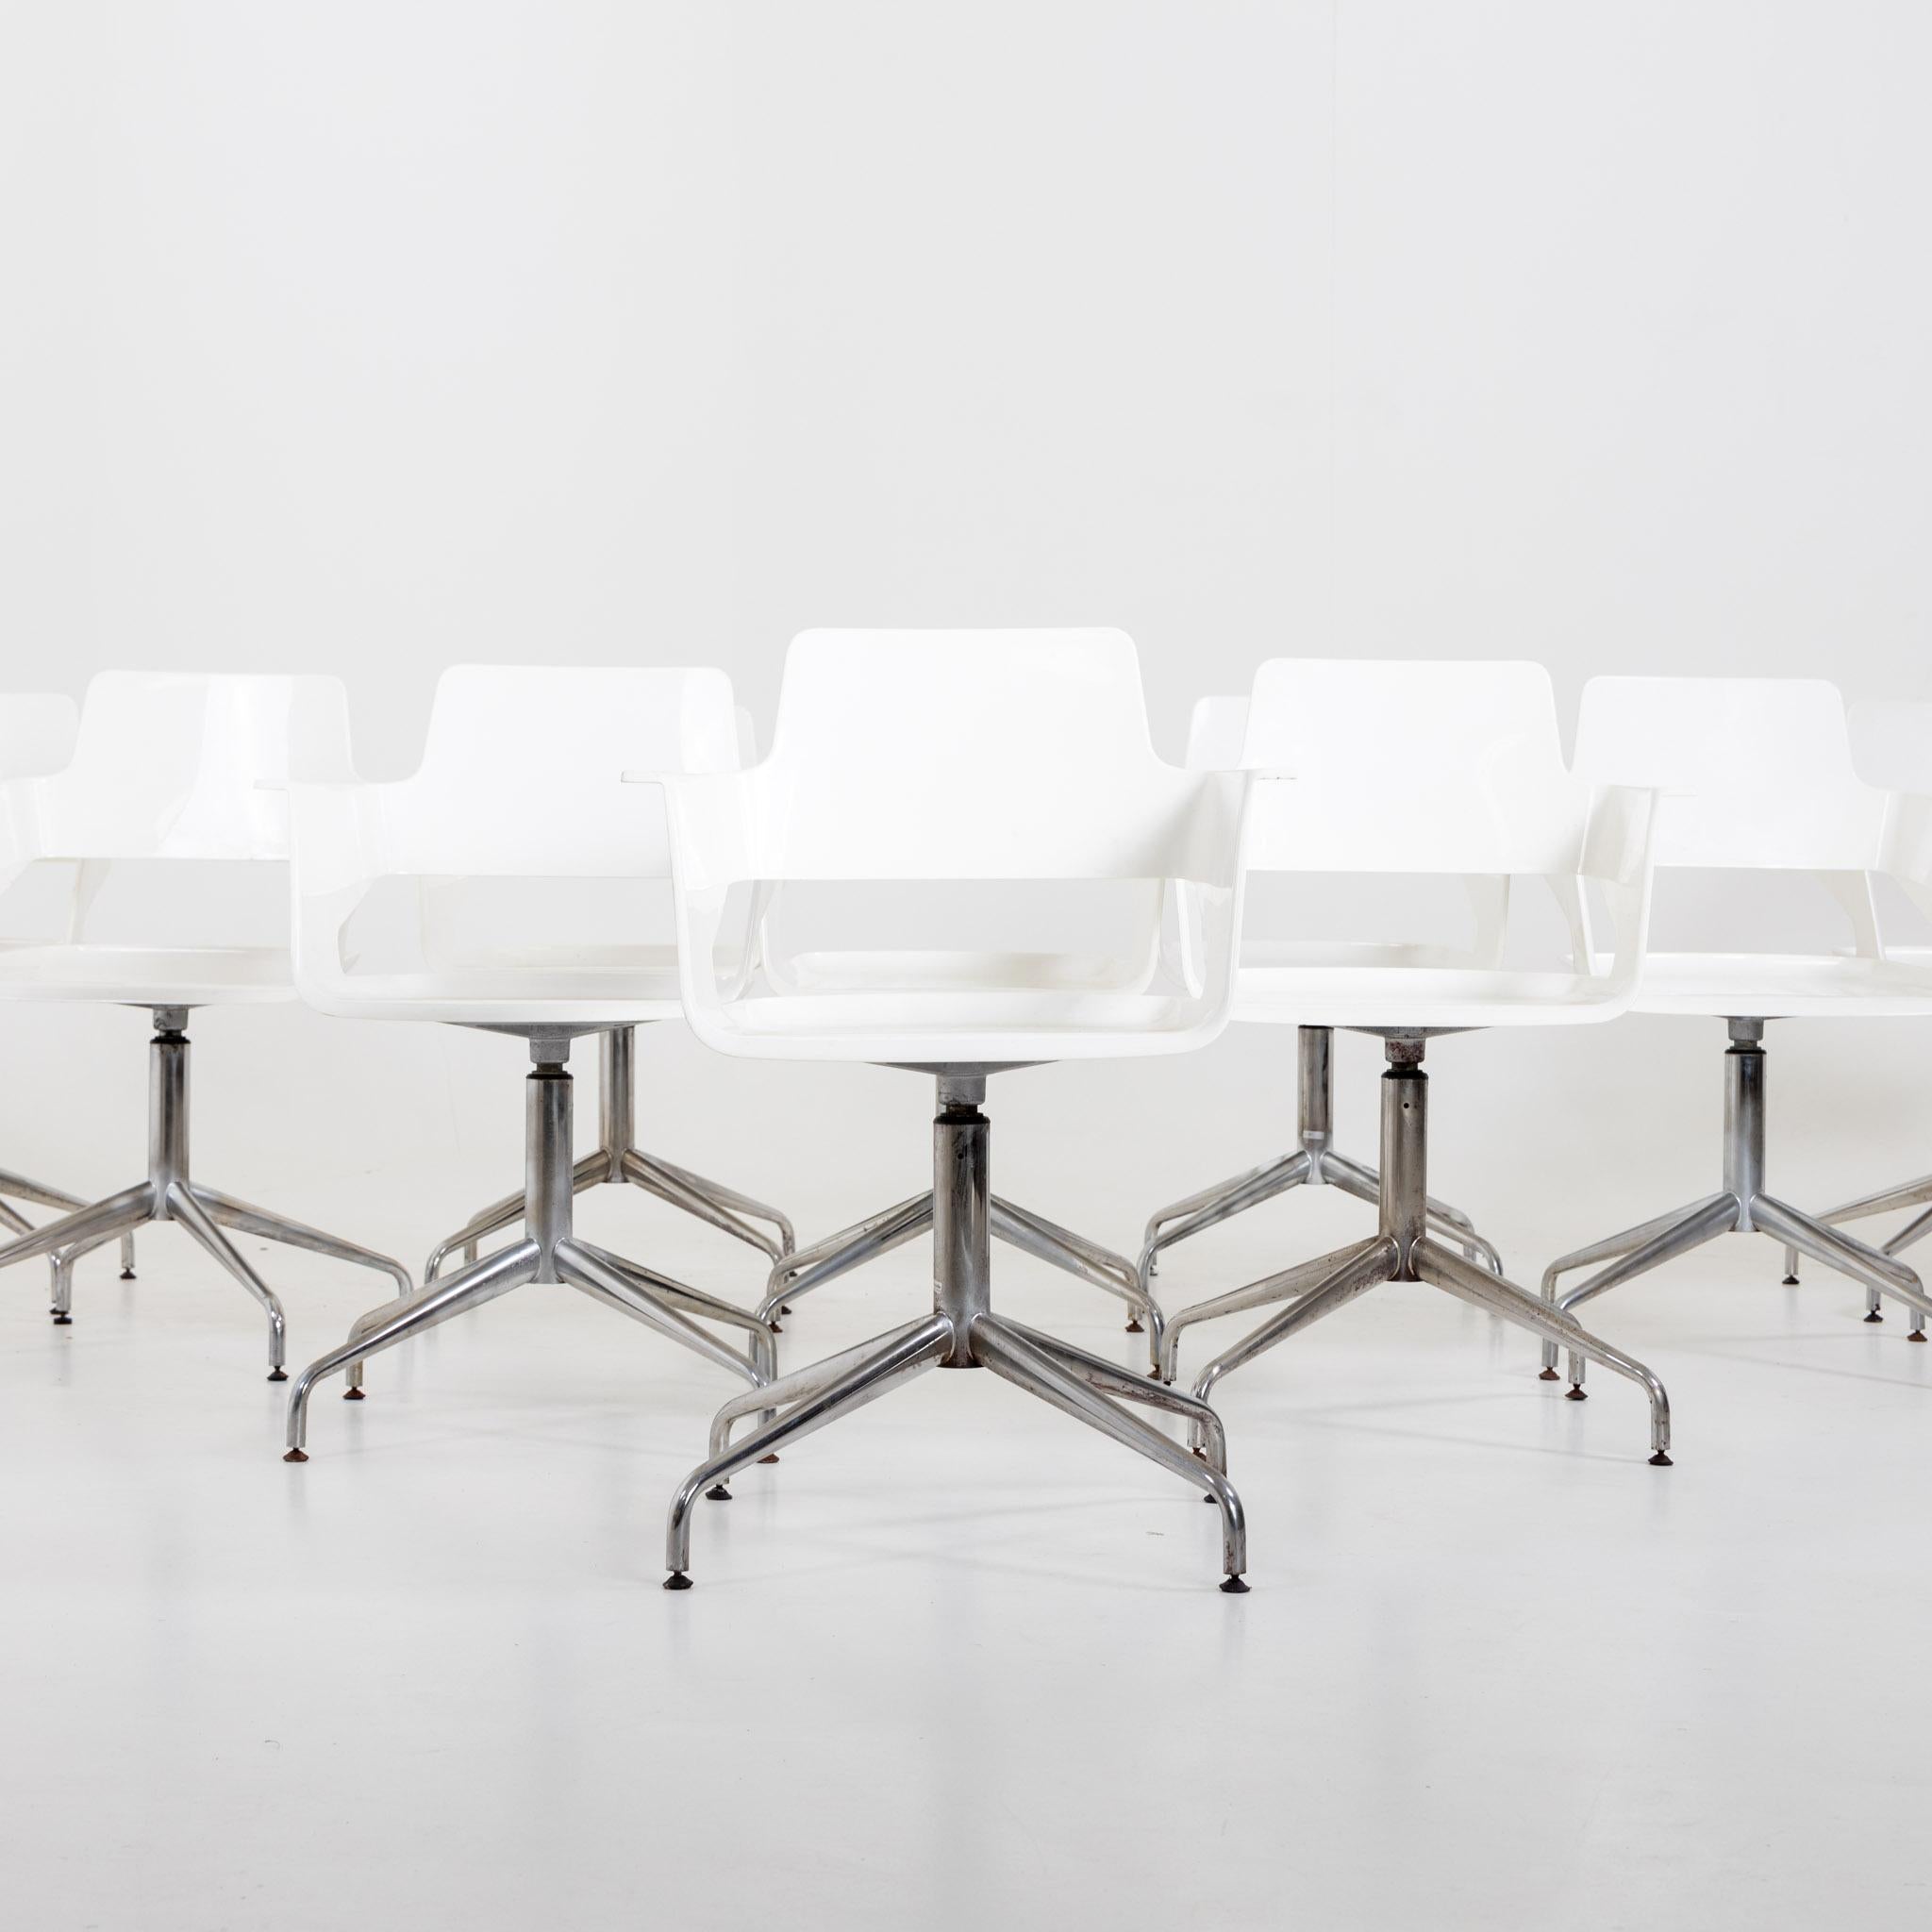 Satz von zehn Bürostühlen auf Metallbeinen und weißen Sitzschalen mit Armlehnen. Die Stühle zeichnen sich durch ein modernes Design mit schlanken Metallbeinen und ergonomischen weißen Sitzschalen aus, die sowohl Stil als auch Komfort bieten. Die